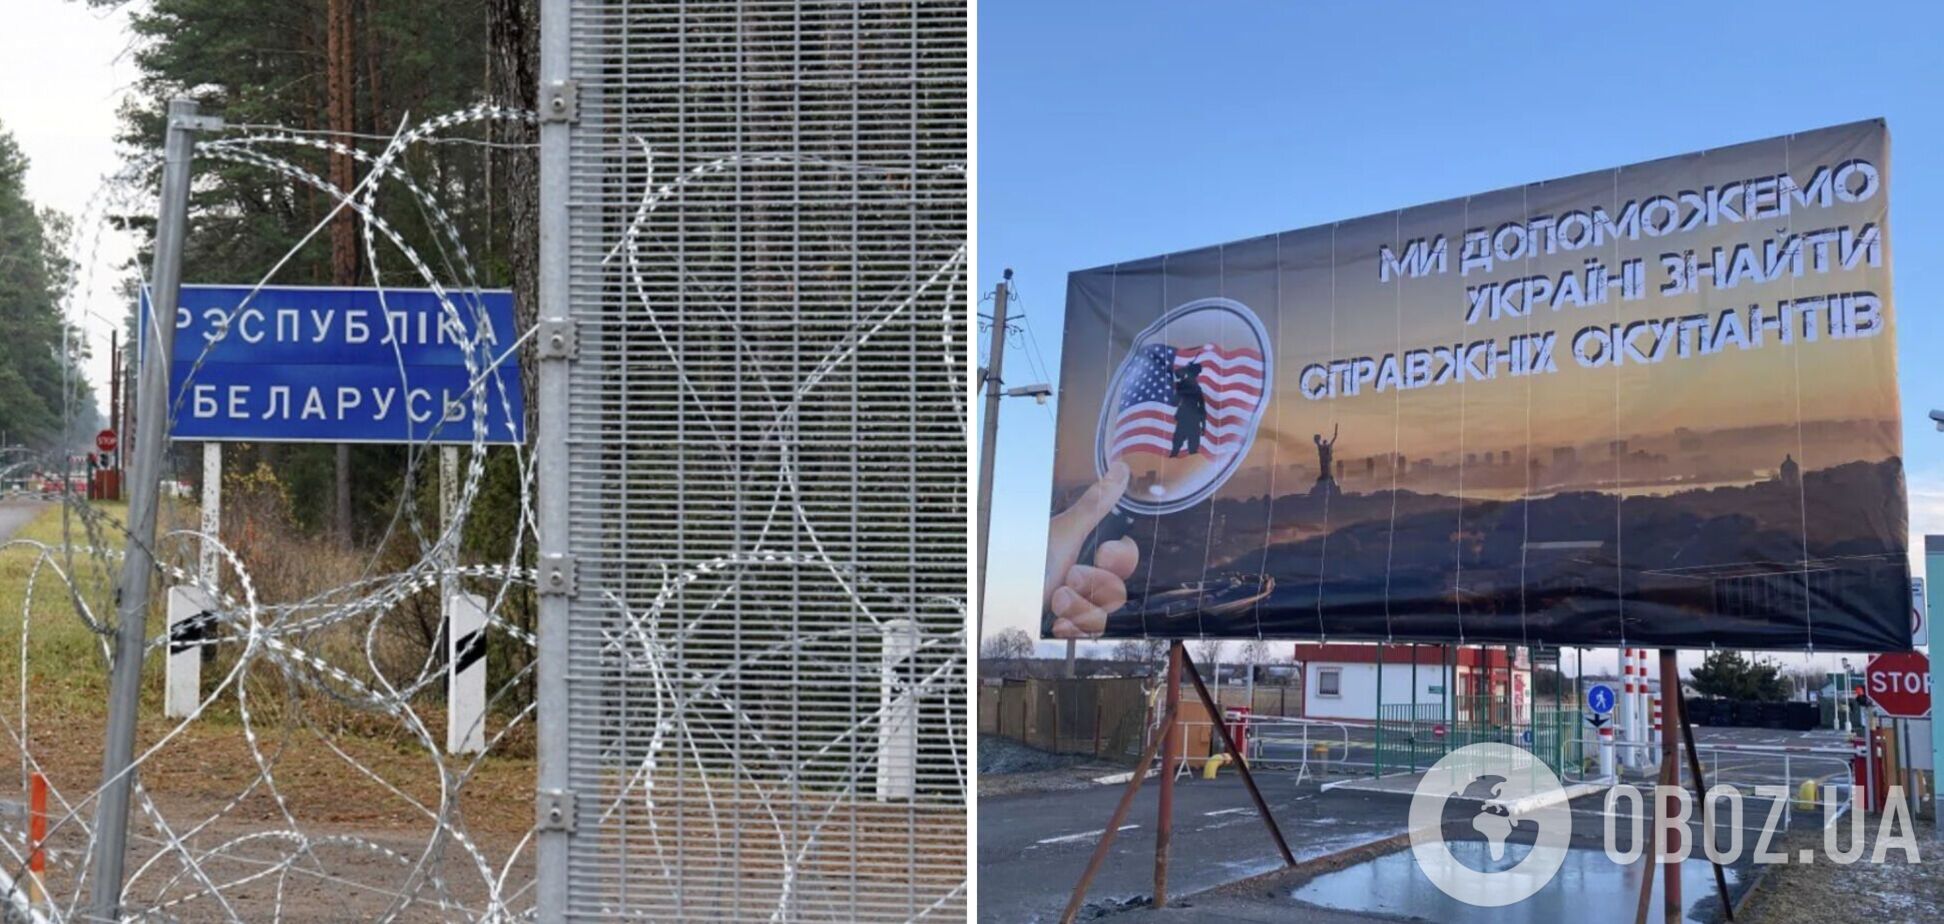 После повешенного 'Валеры'? На границе с Беларусью появились билборды с флагом США и провокационными надписями